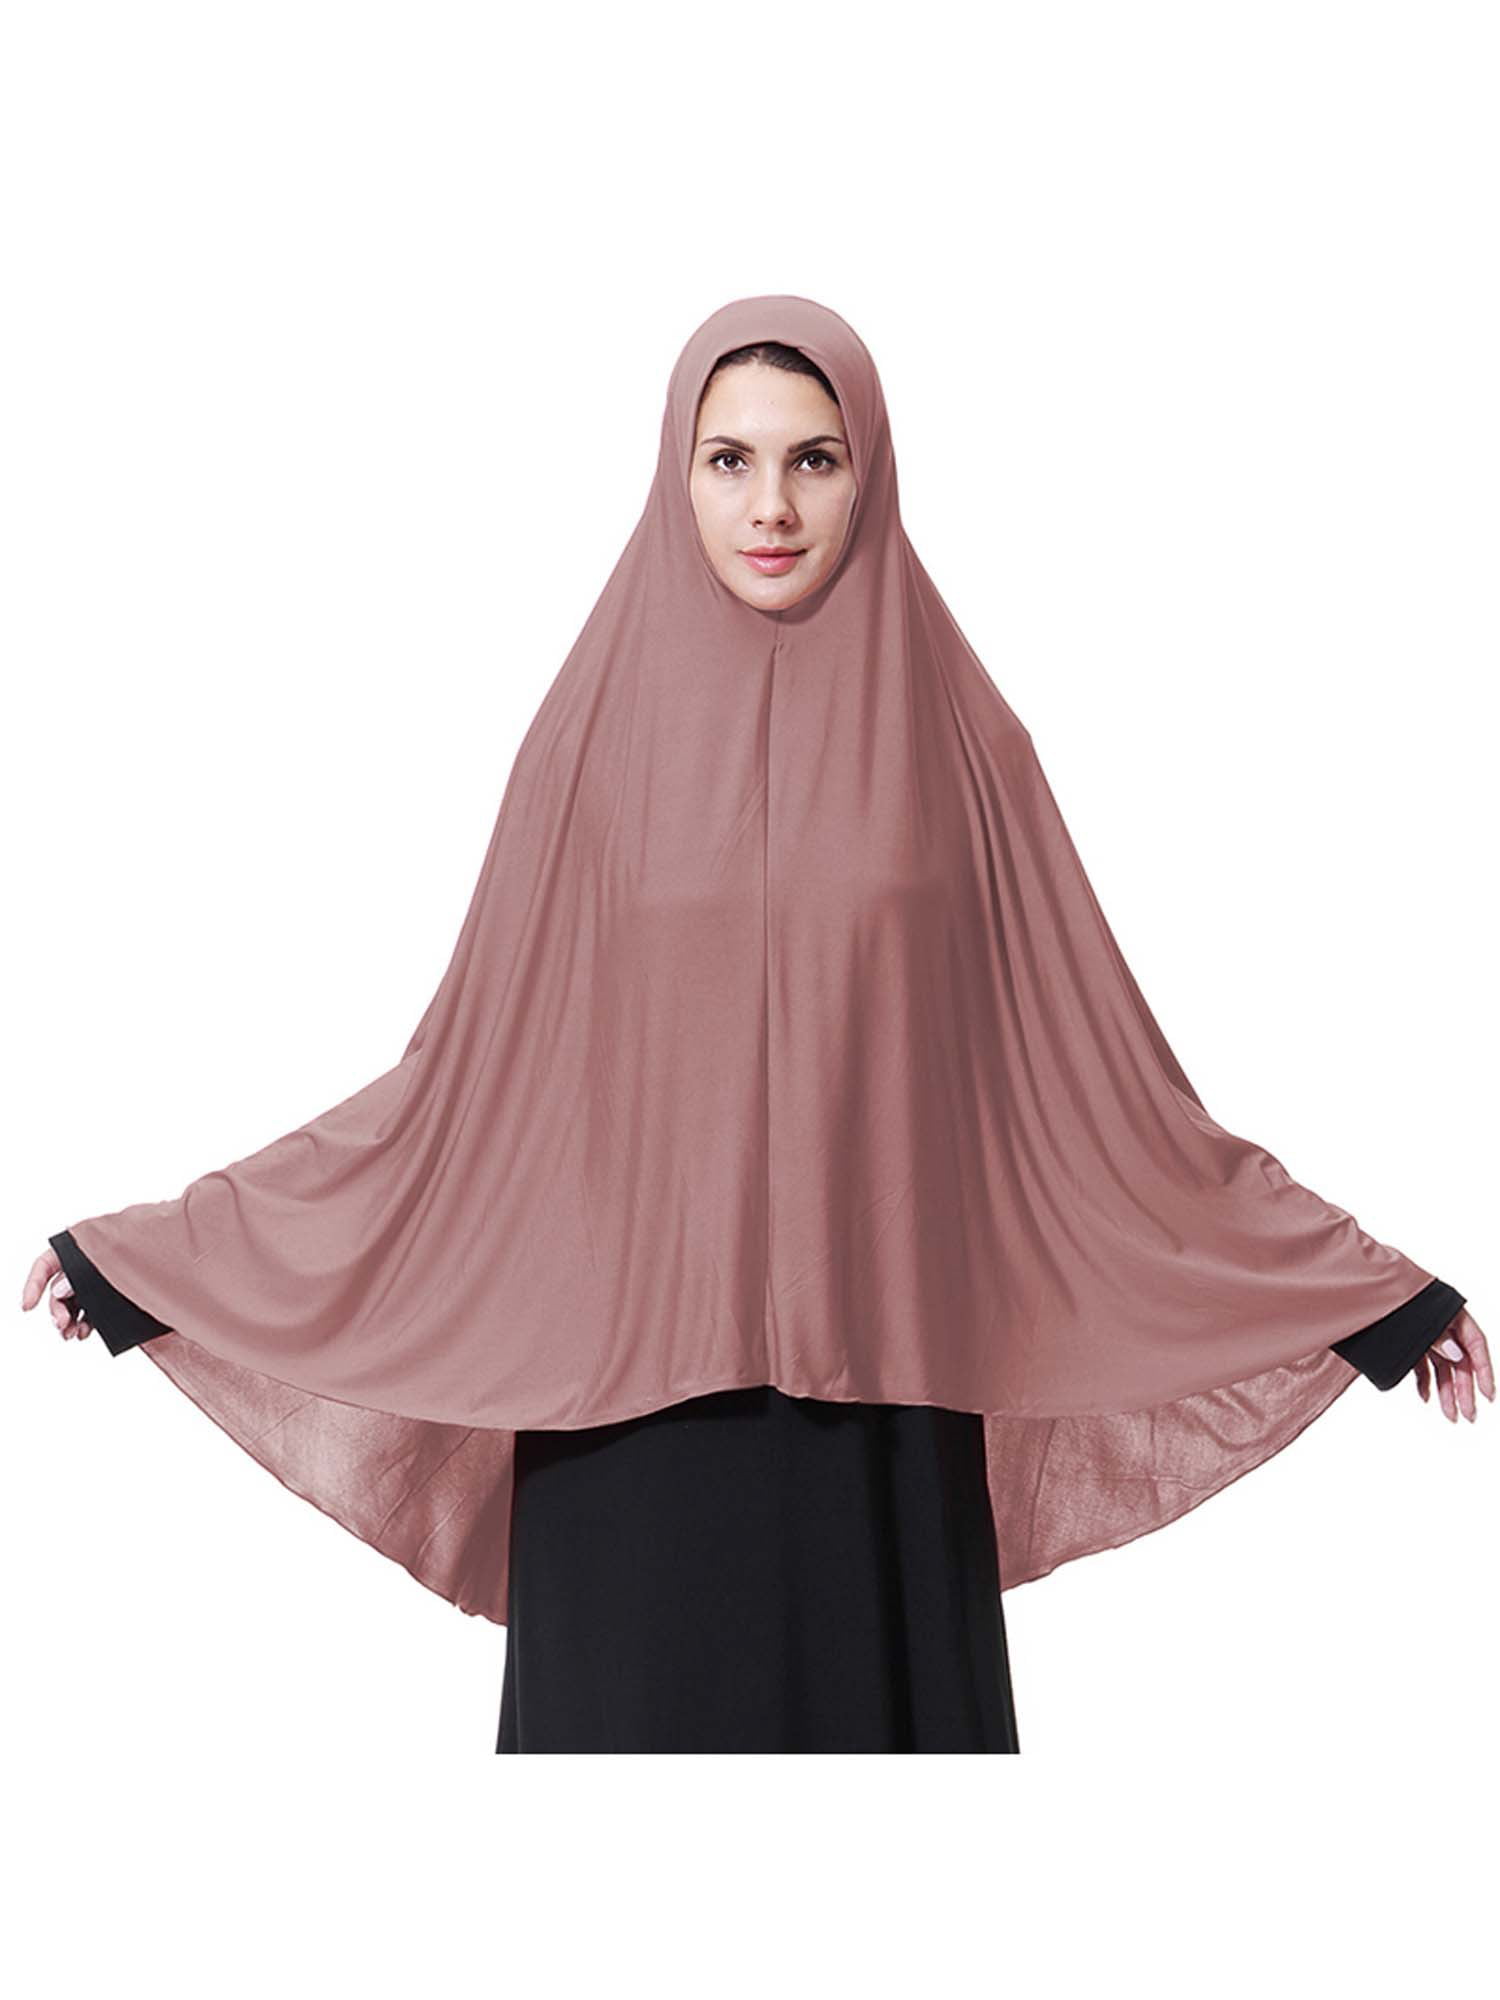 Muslim Women AI Amira Scarf Hijab Rhinestone Headscarf Wrap Shawl Stole Islamic